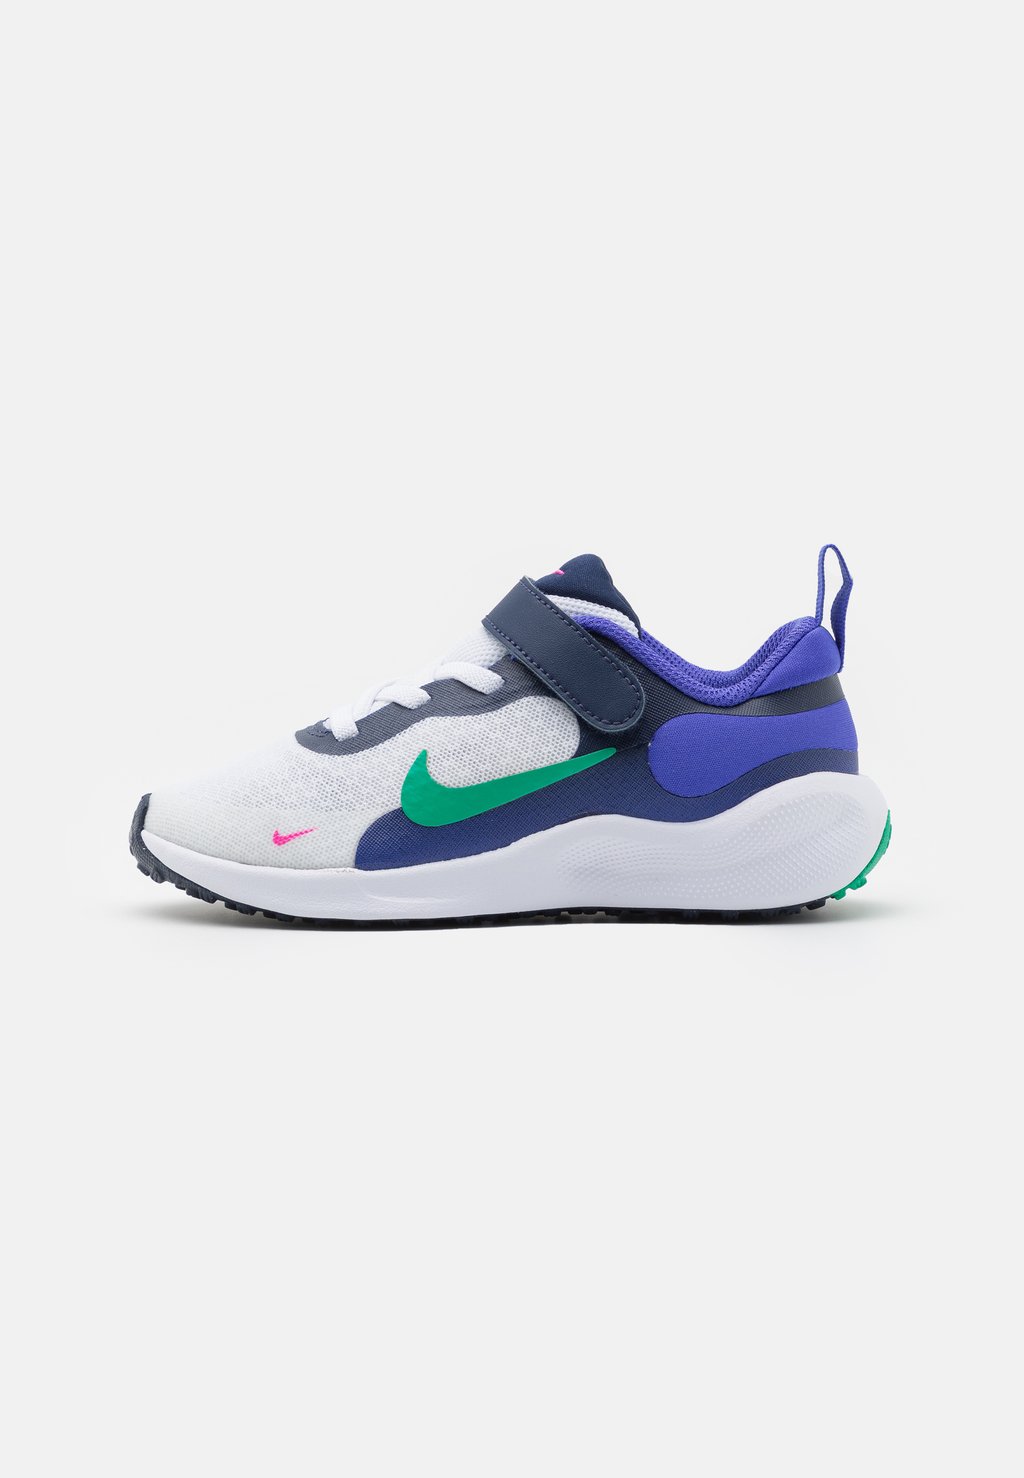 Нейтральные кроссовки Revolution 7 Unisex Nike, цвет white/stadium green/persian violet/midnight navy